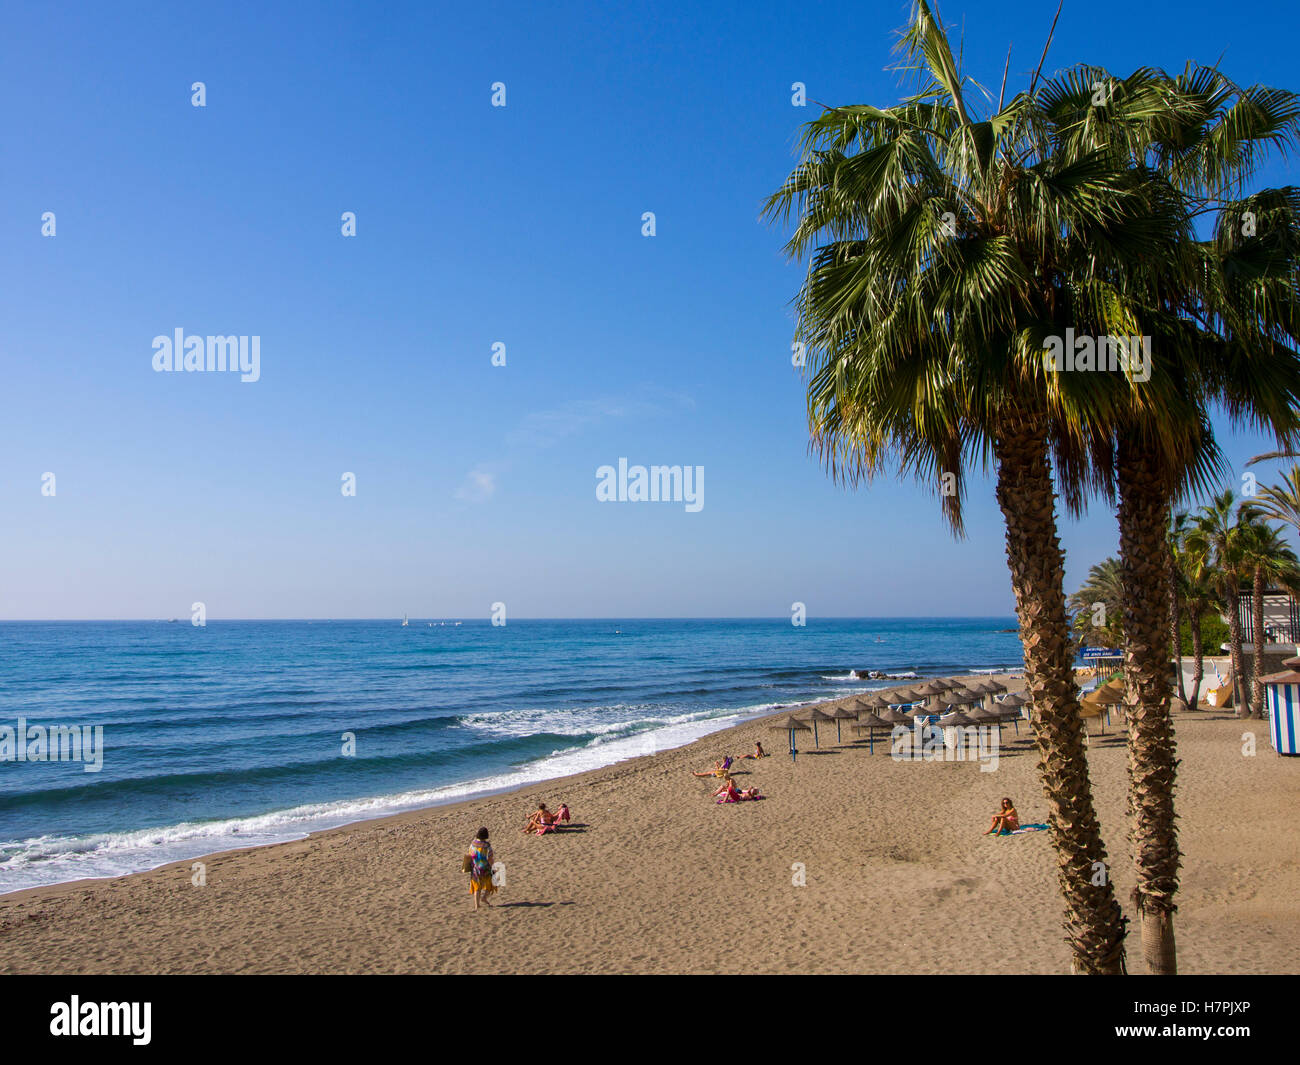 La Bajadilla beach. Marbella, Malaga province, Costa del Sol, Andalusia, Spain Europe Stock Photo